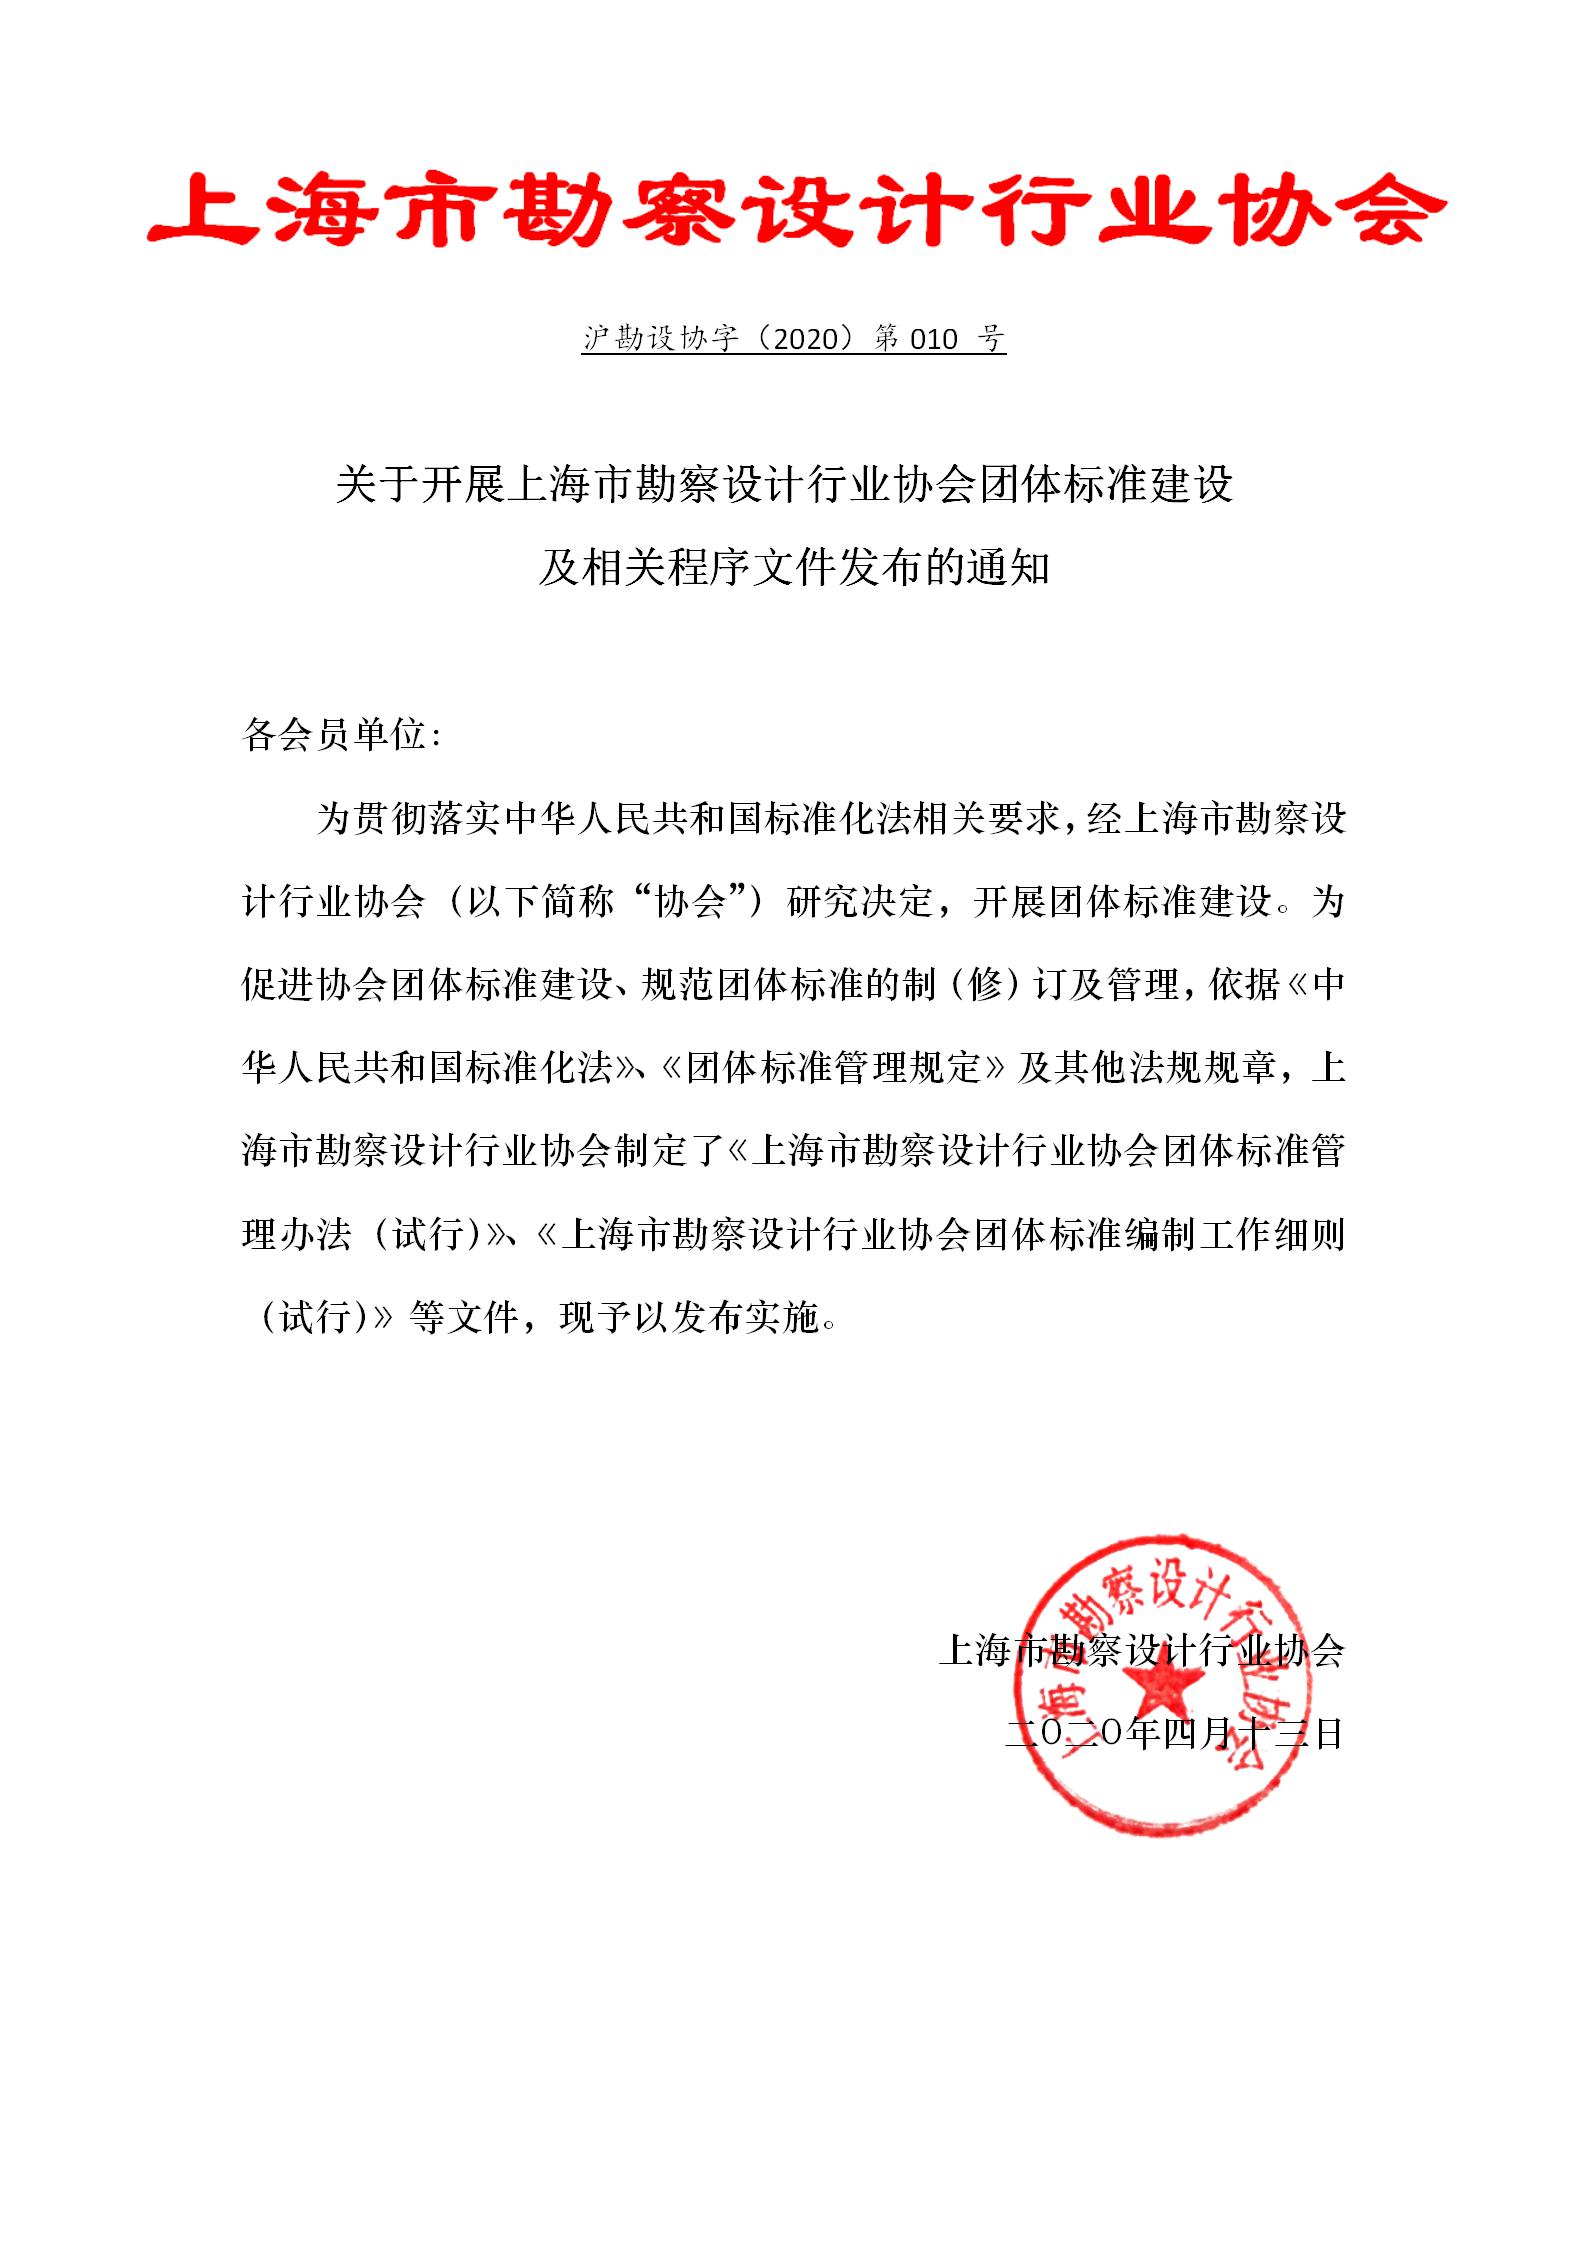 关于发布上海市勘察设计行业协会团体标准相关程序文件的通知(1)_01.jpg